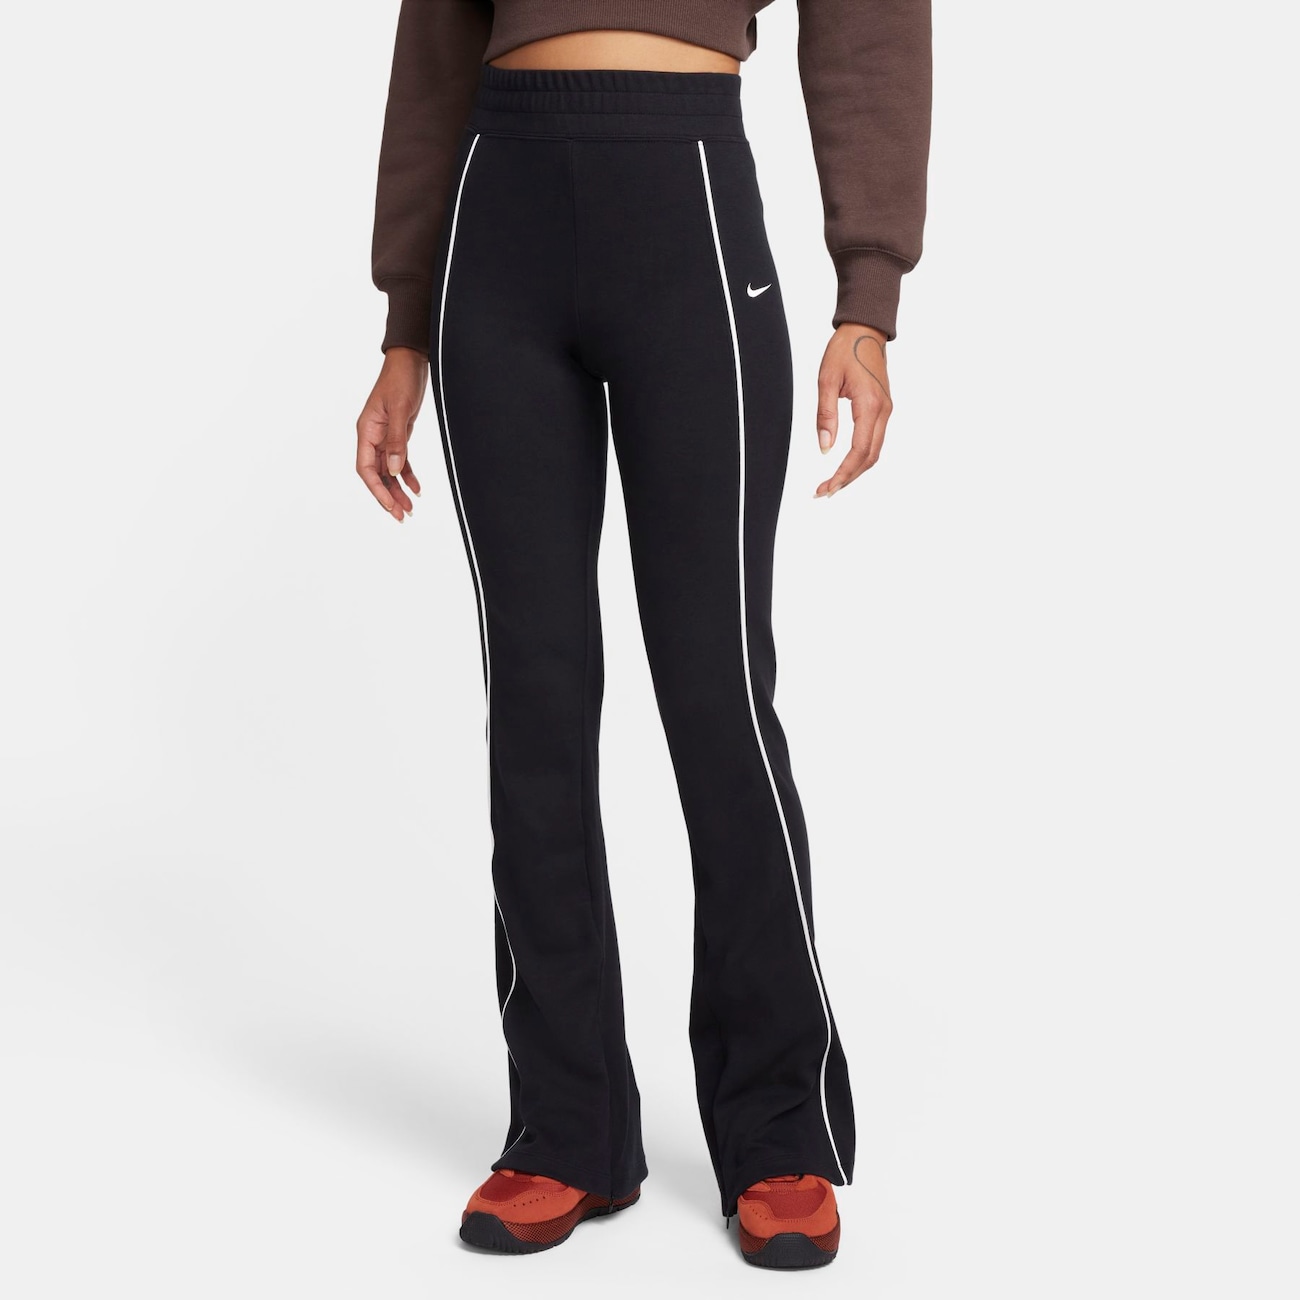 Bukser med slidskanter fra Nike Sportswear-kollektionen til kvinder - sort